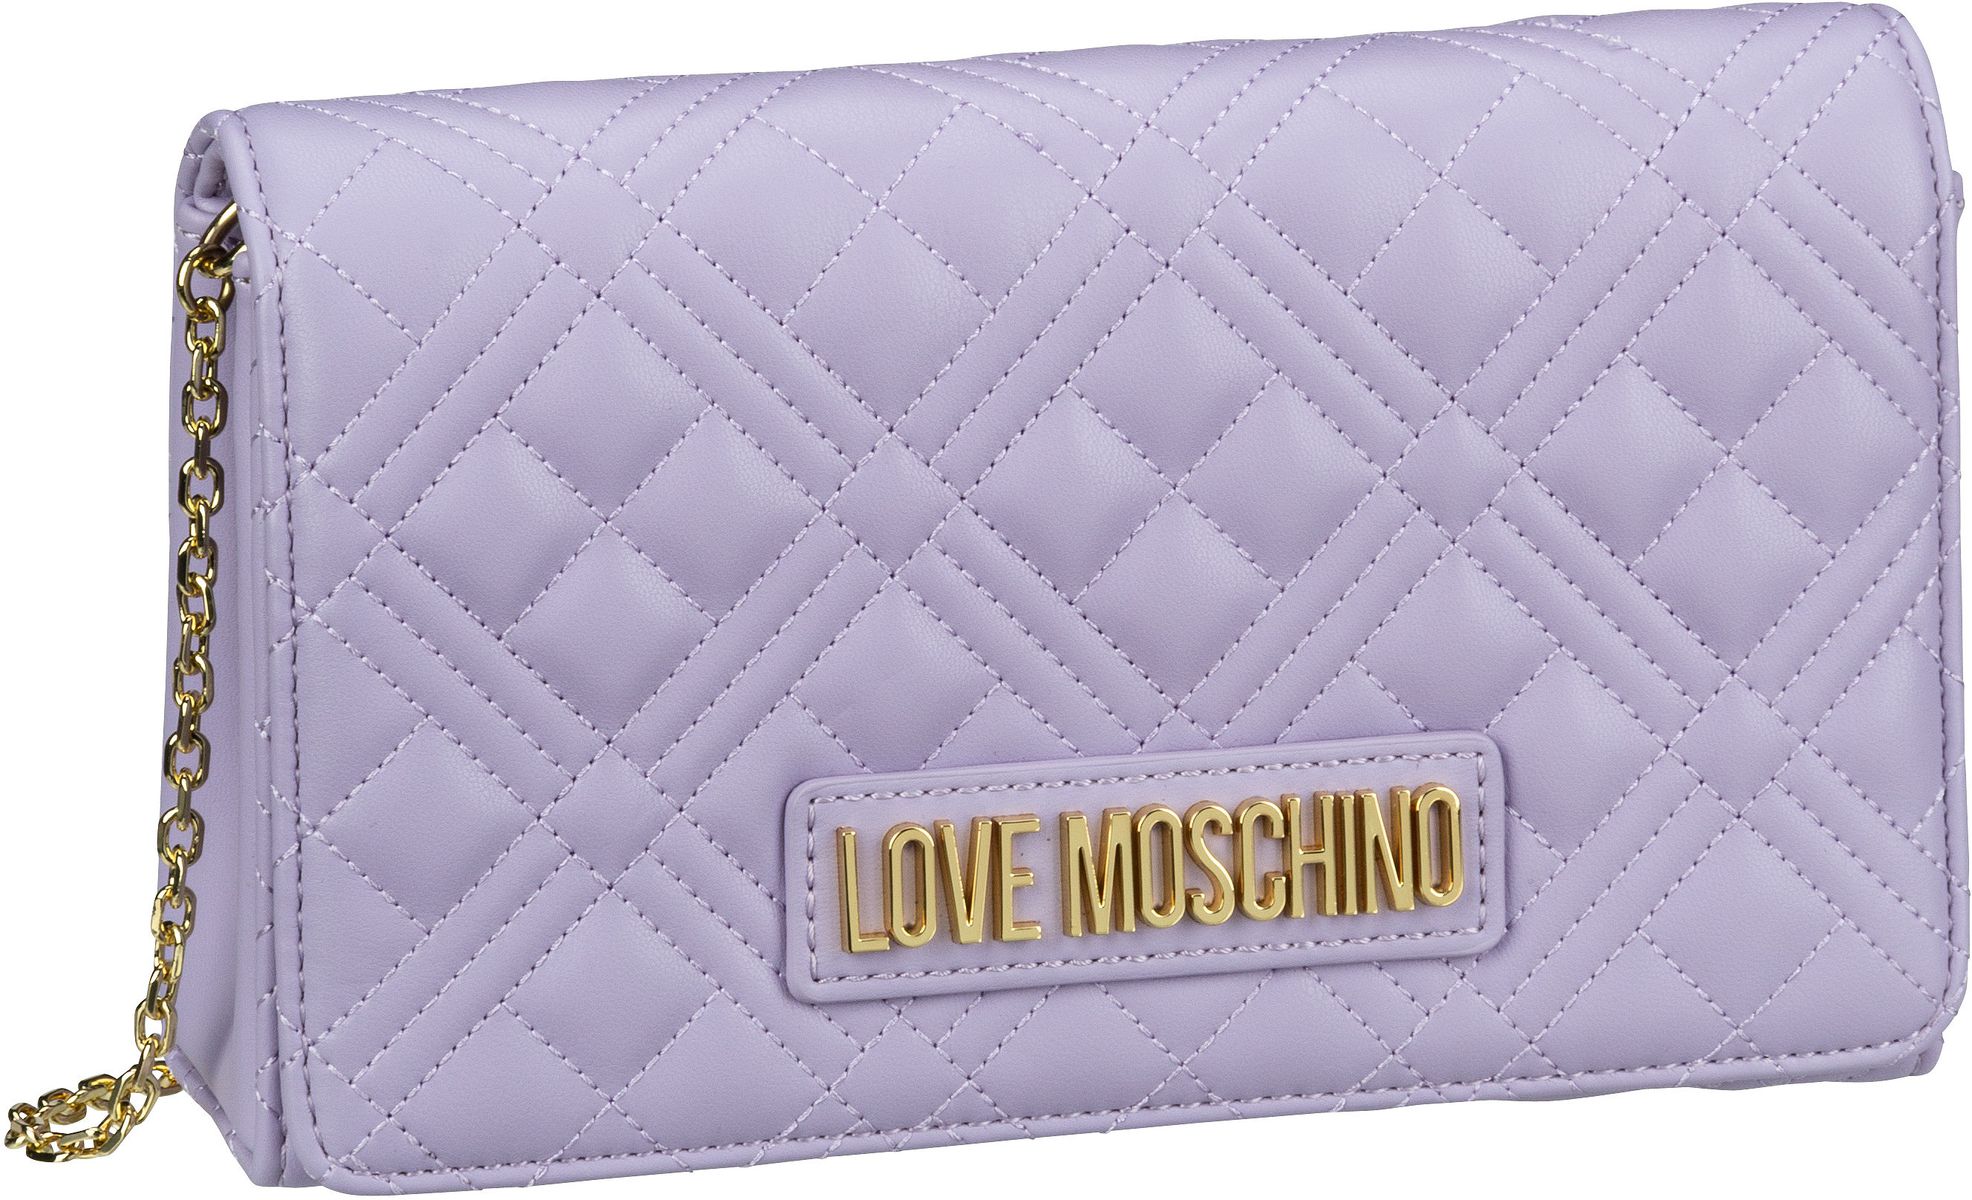 Love Moschino Evening Bag 4079 - Lilac